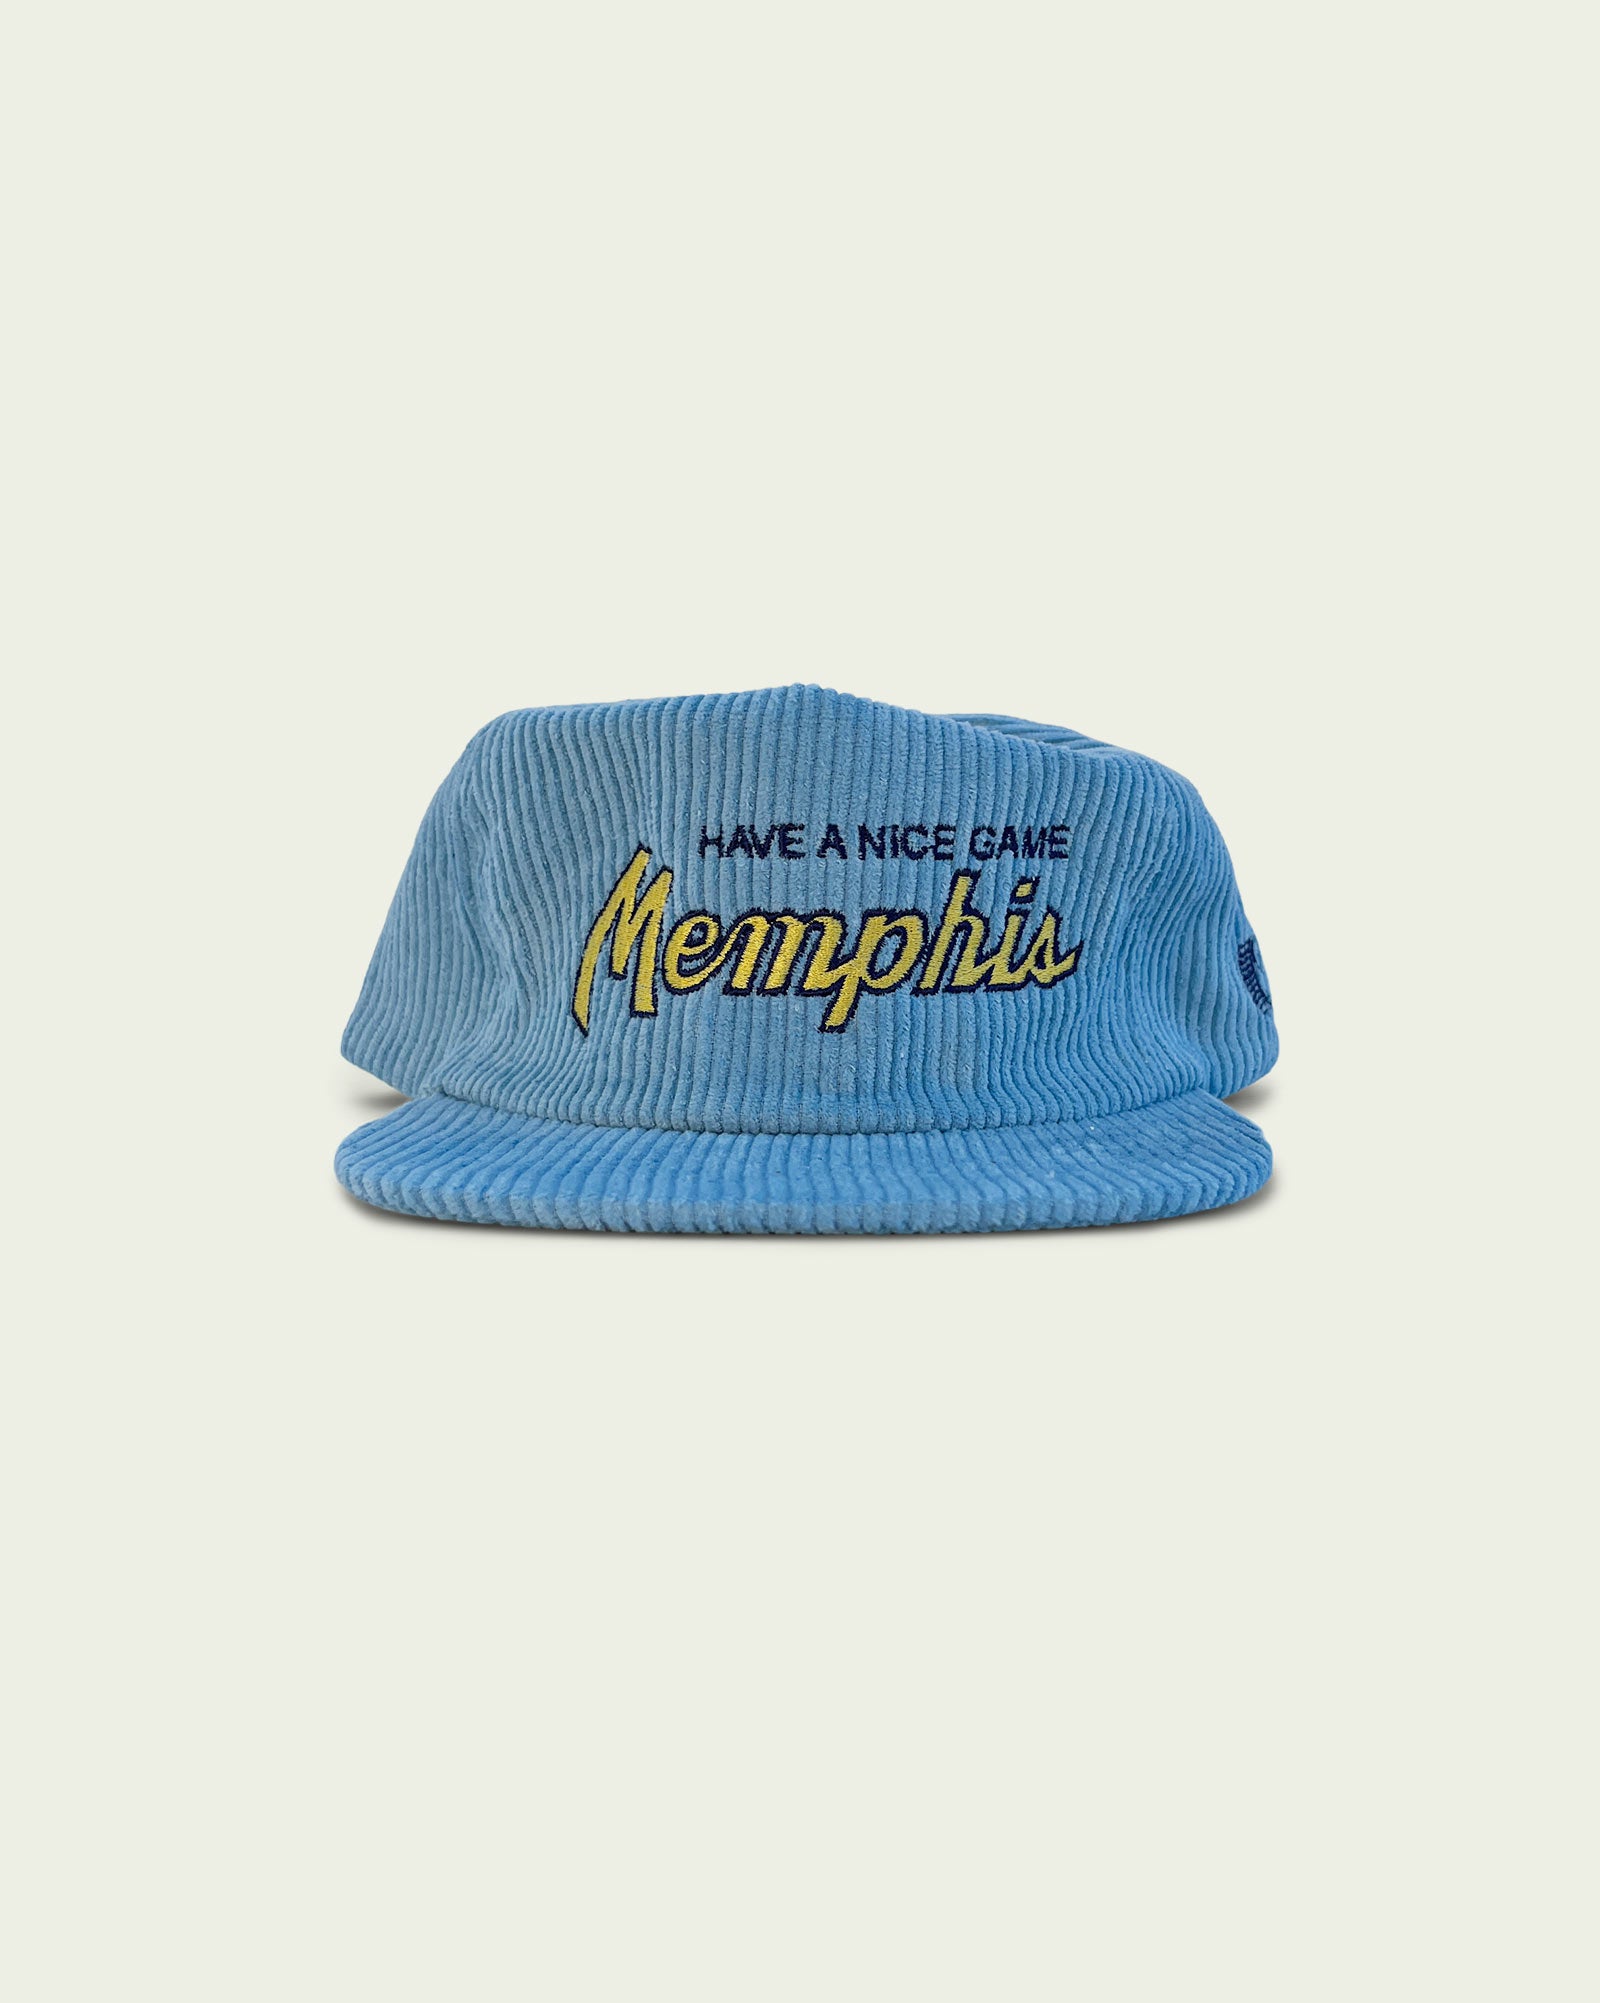 memphis grizzlies vintage cap